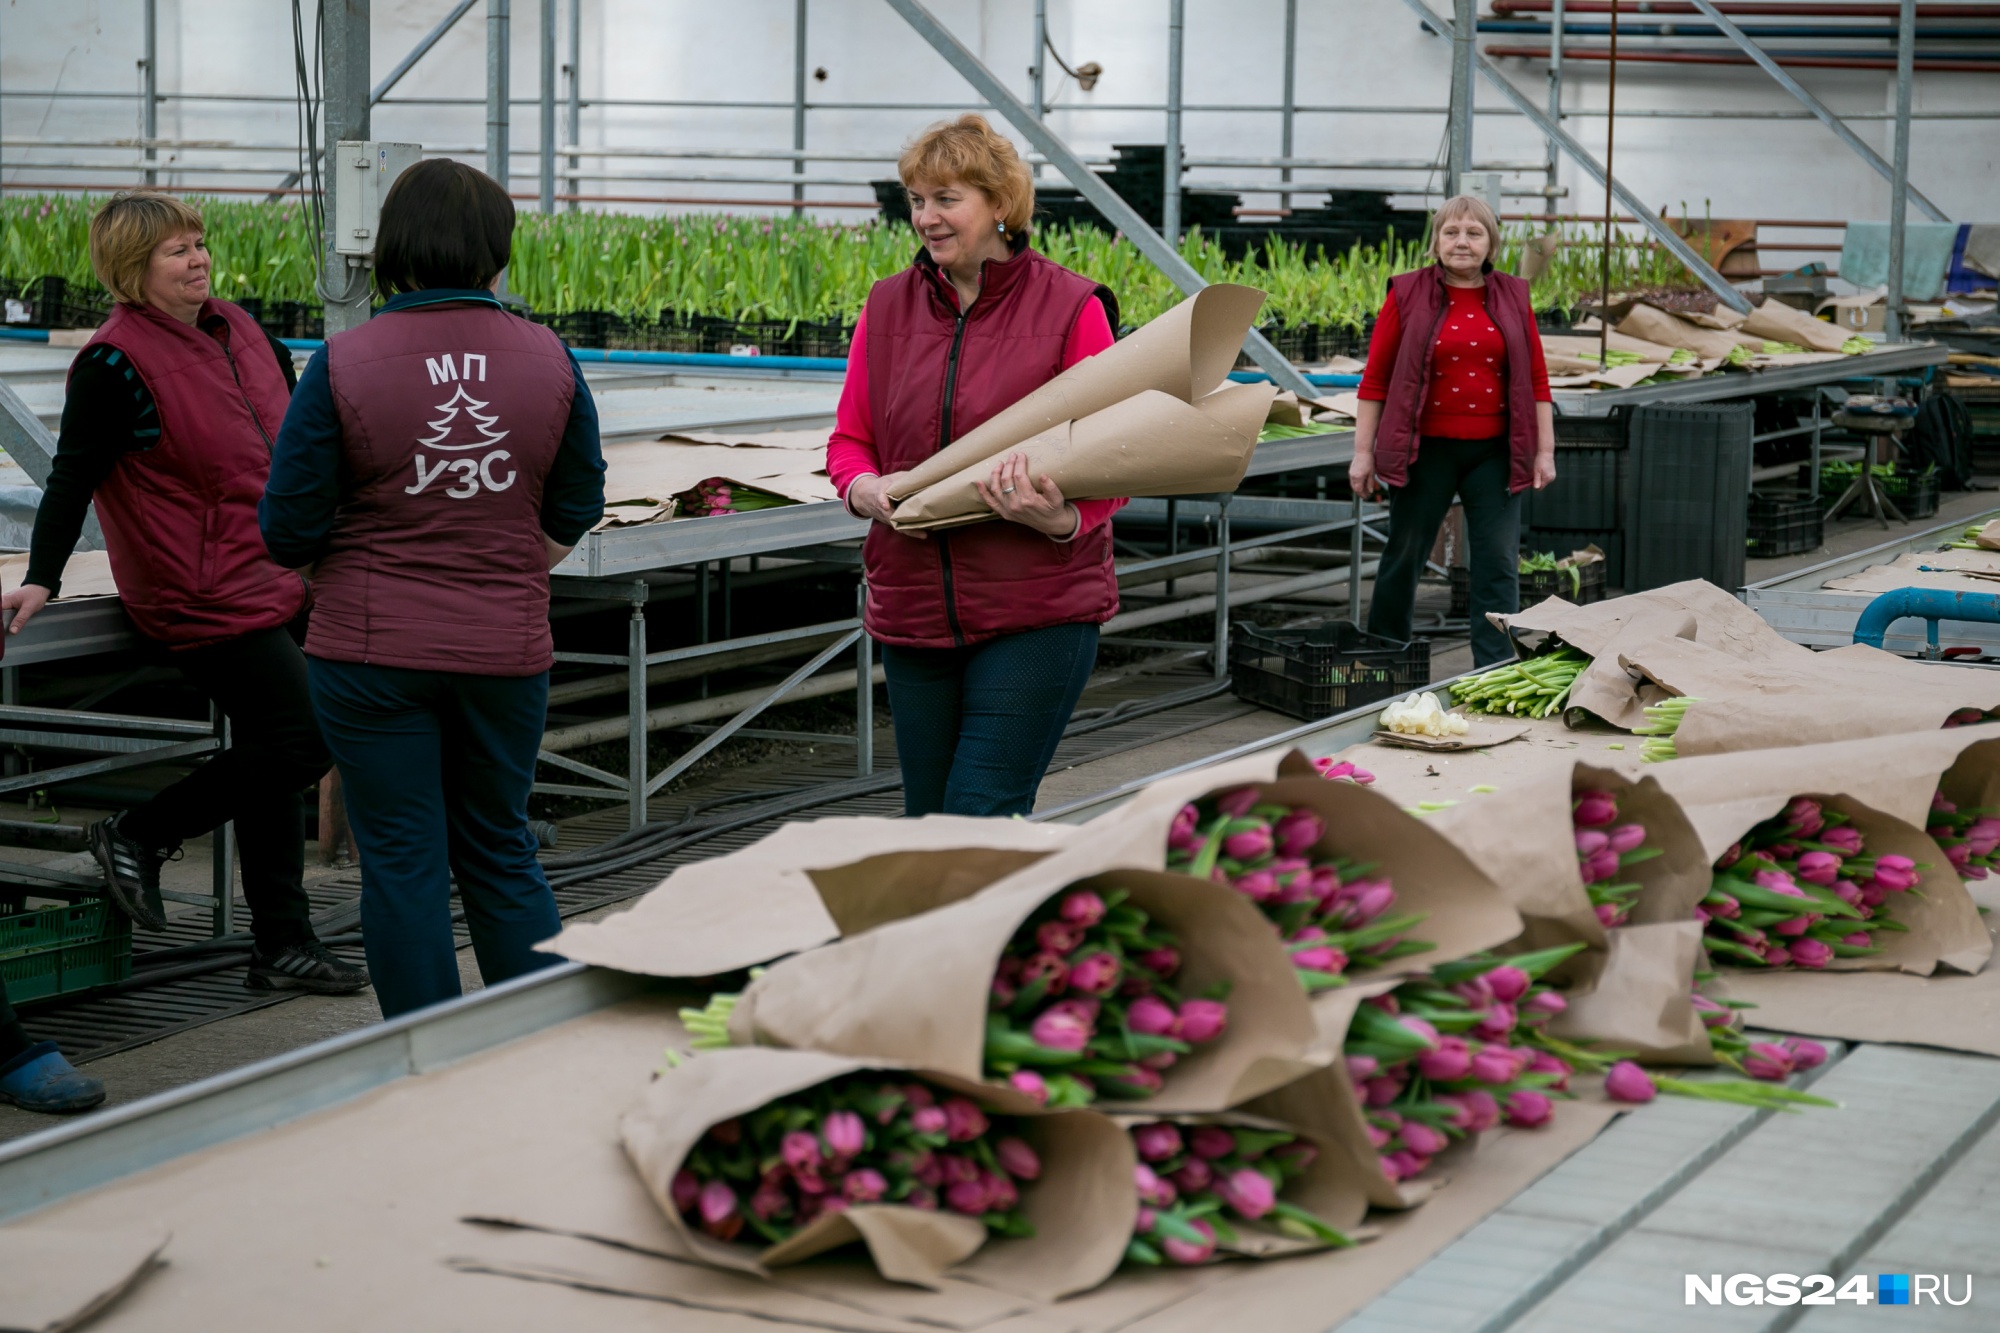 Посадка, уход, срезка 200 тысяч растений — со всем в управлении справляются 20 человек